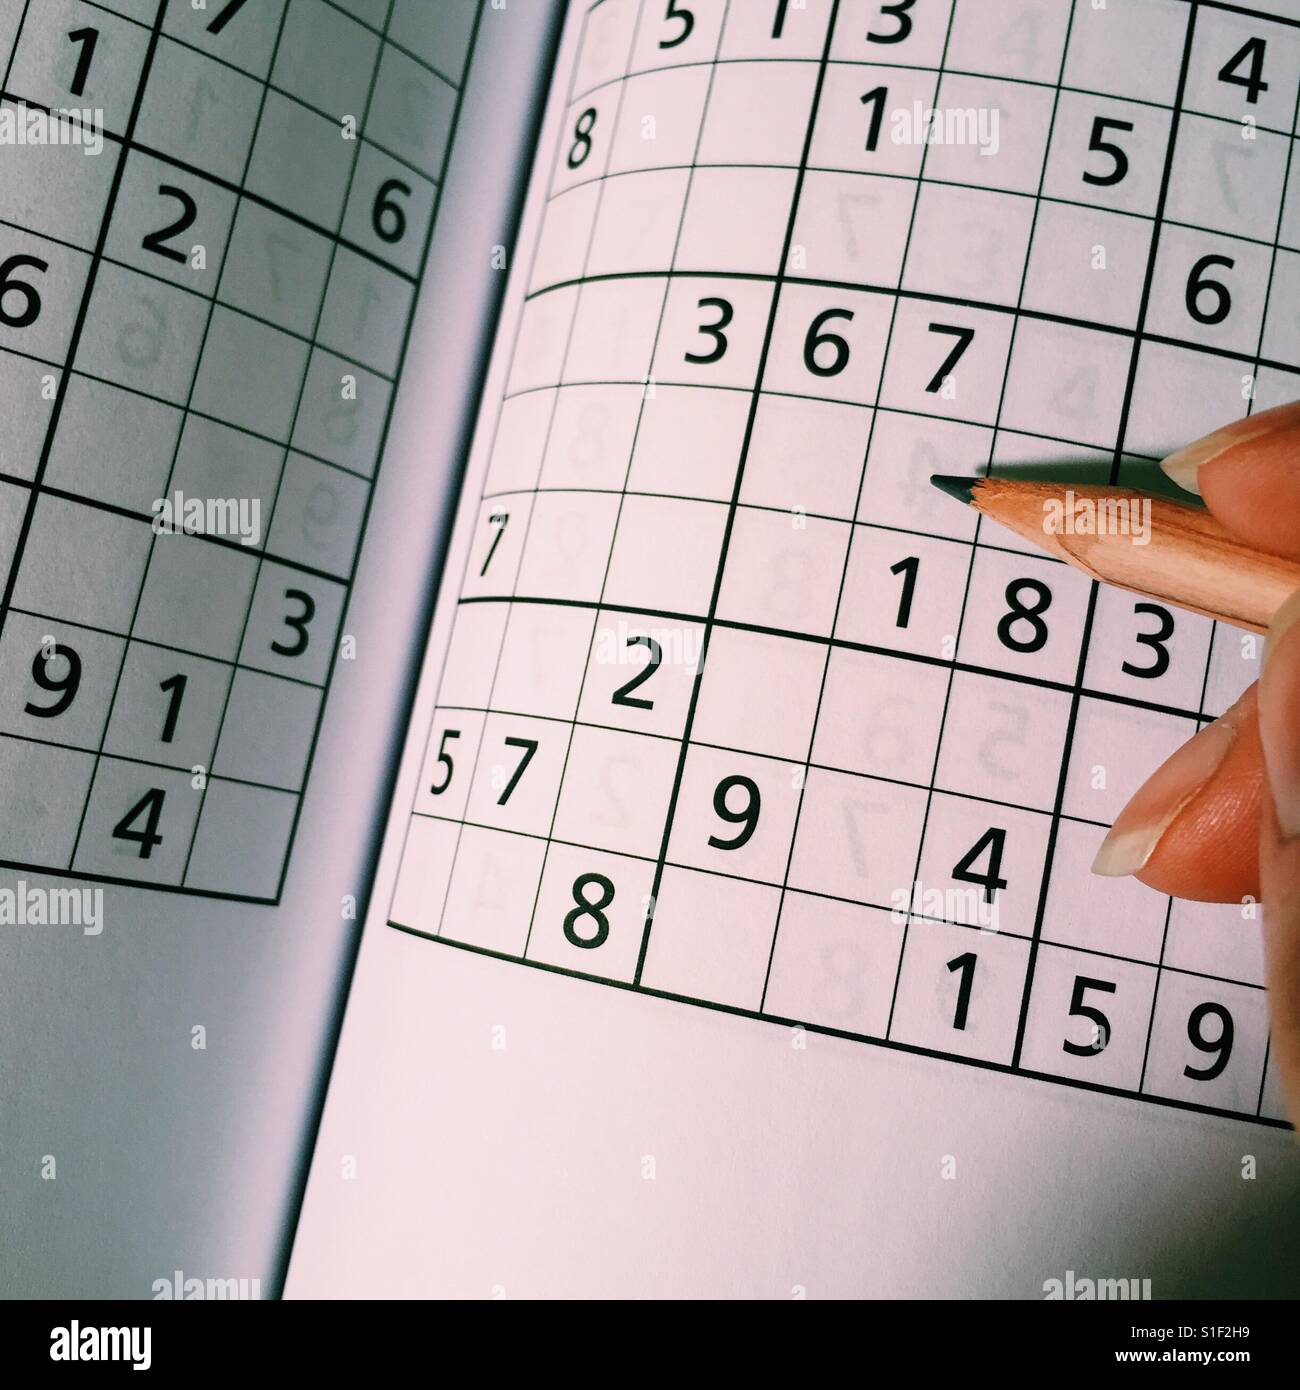 Sudoku e imágenes alta resolución - Alamy